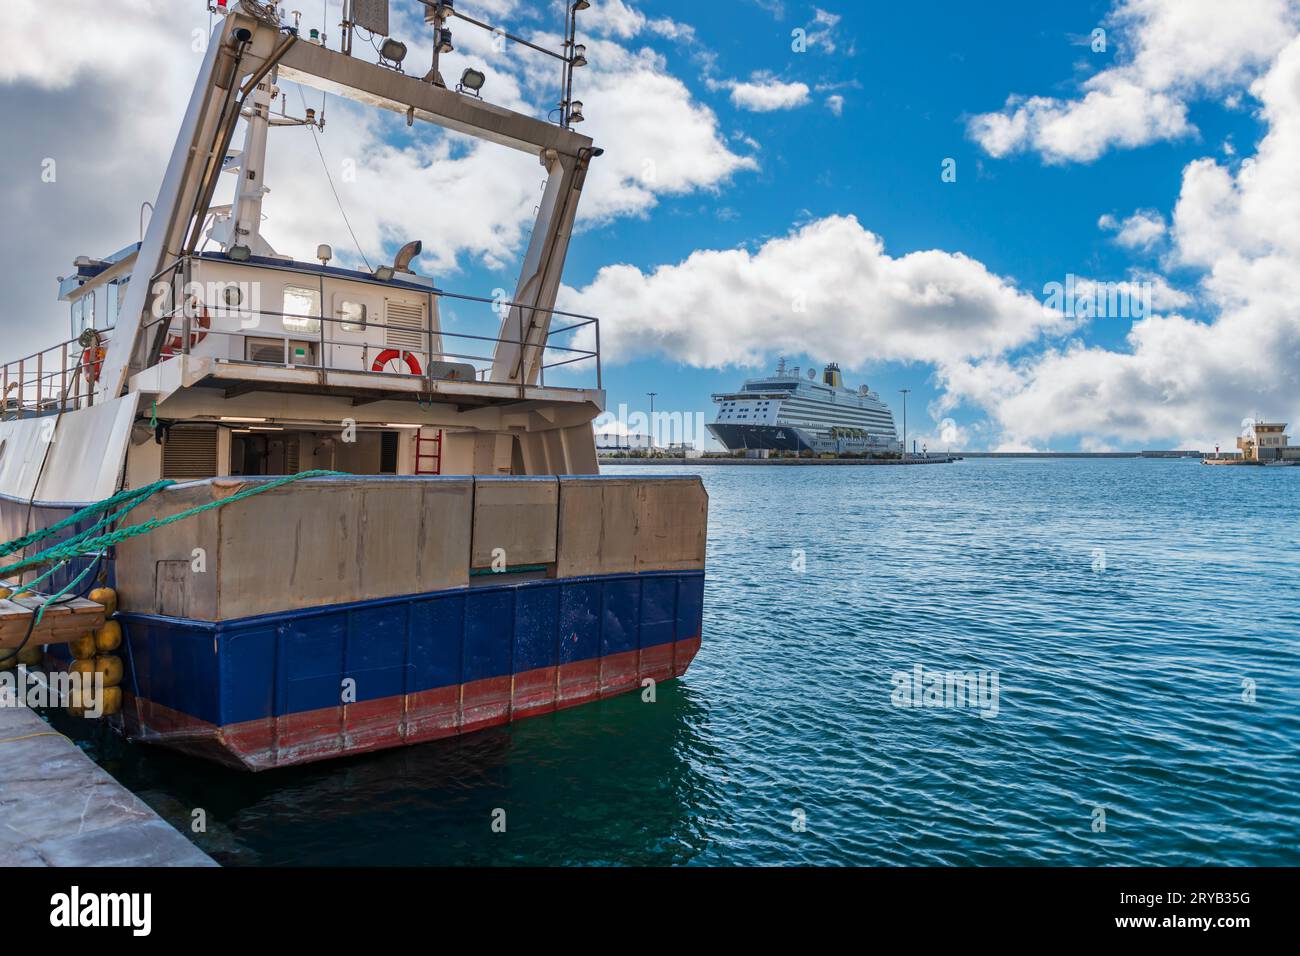 Un bateau de croisière amarré et un chalutier au premier plan, dans le port de Sète, France Banque D'Images